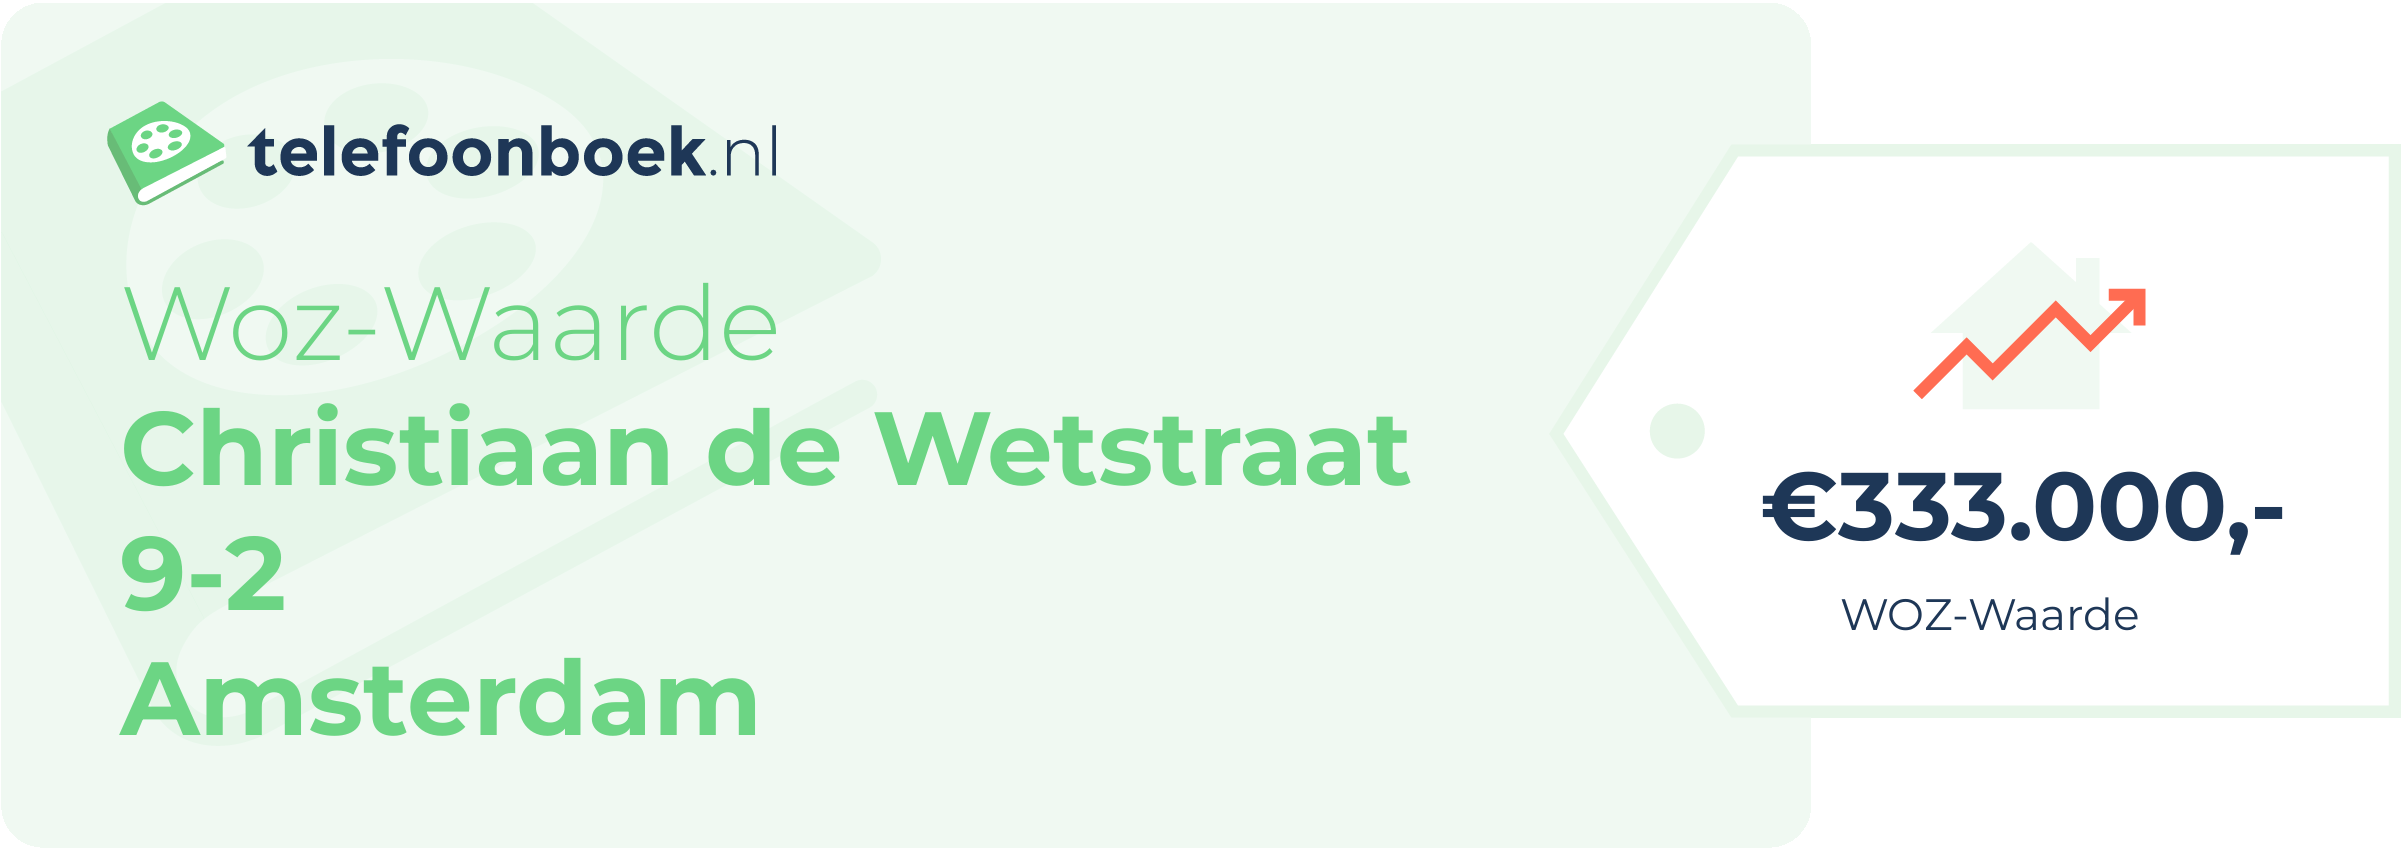 WOZ-waarde Christiaan De Wetstraat 9-2 Amsterdam